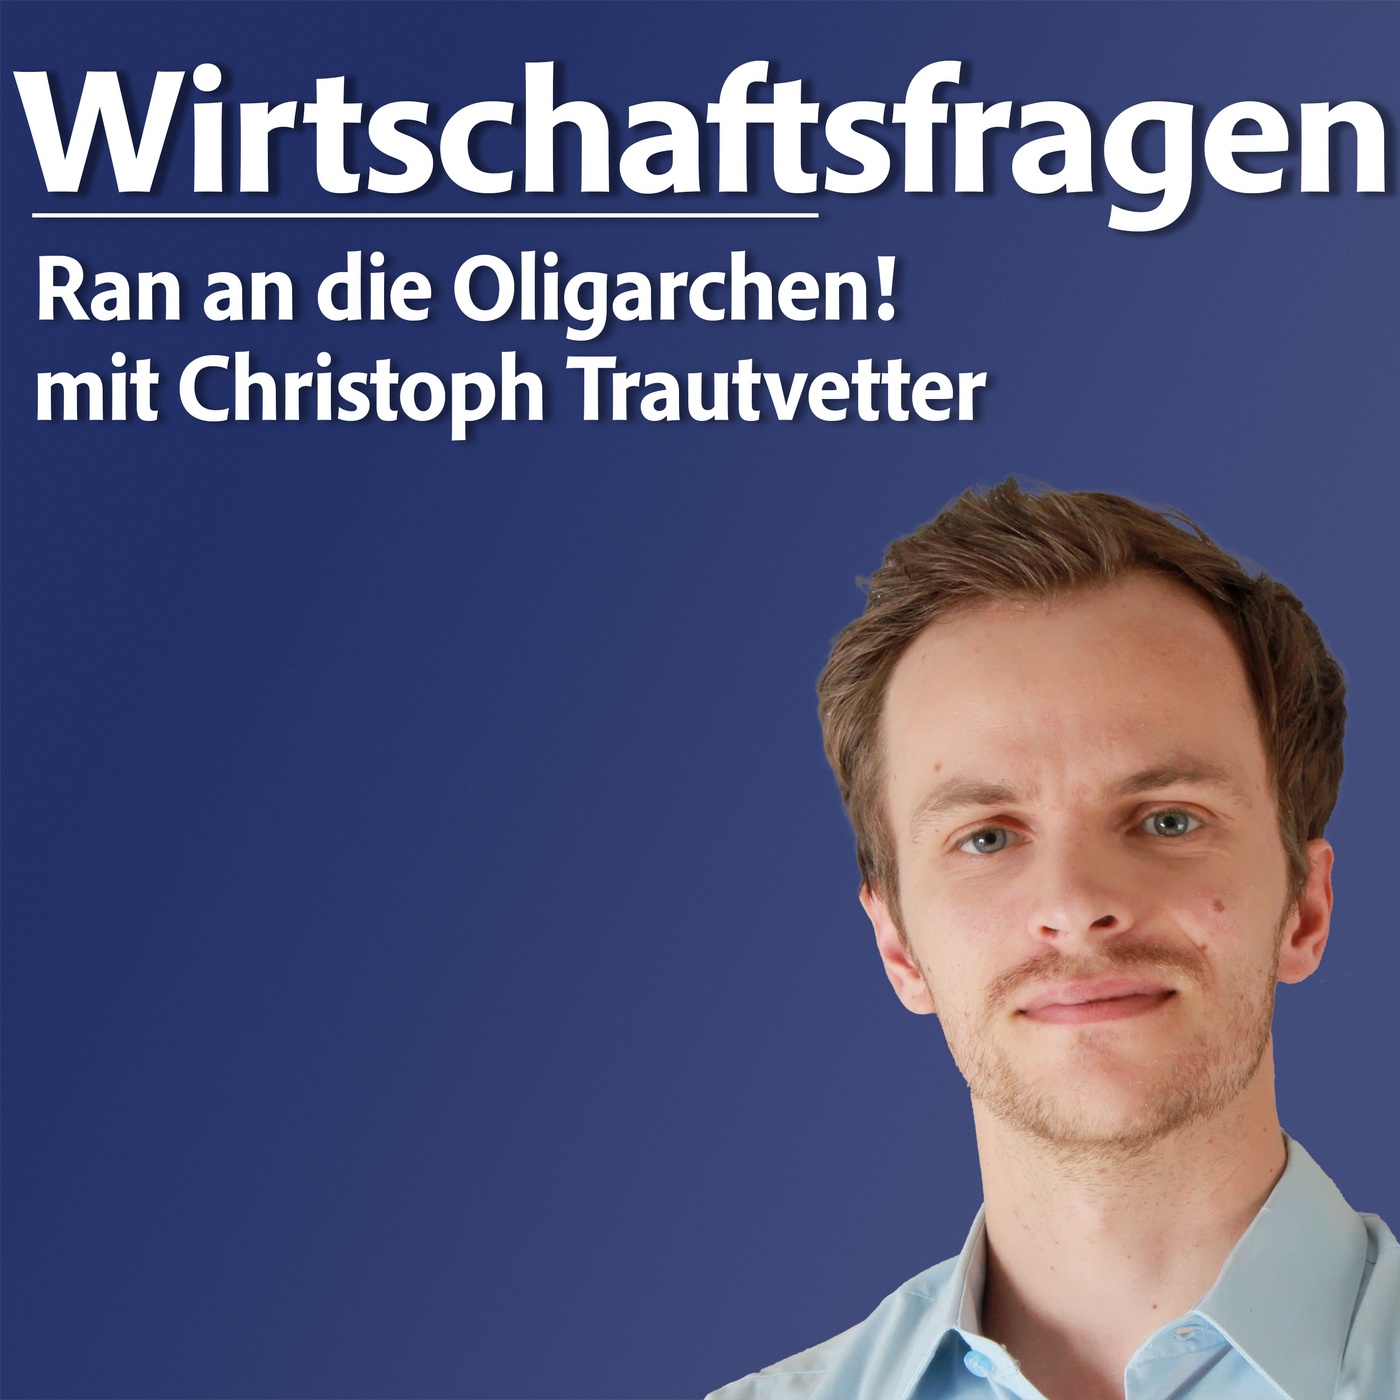 Ran an die Oligarchen! - mit Christoph Trautvetter